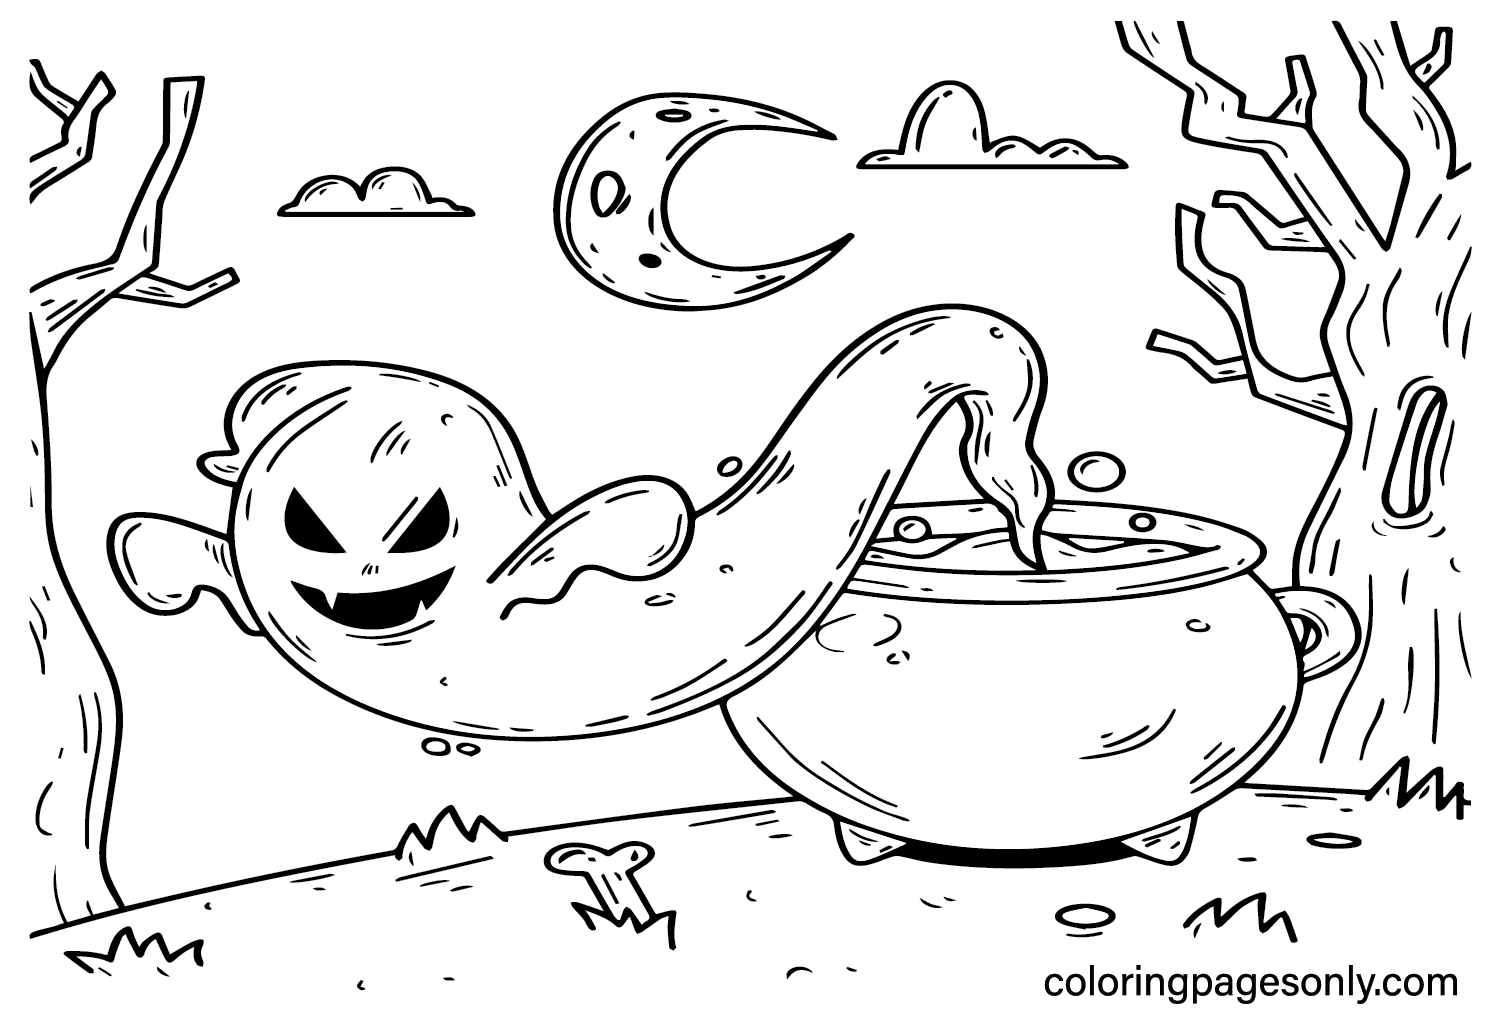 Páginas para colorear de Halloween aterradoras para adultos de Spooktacular Halloween